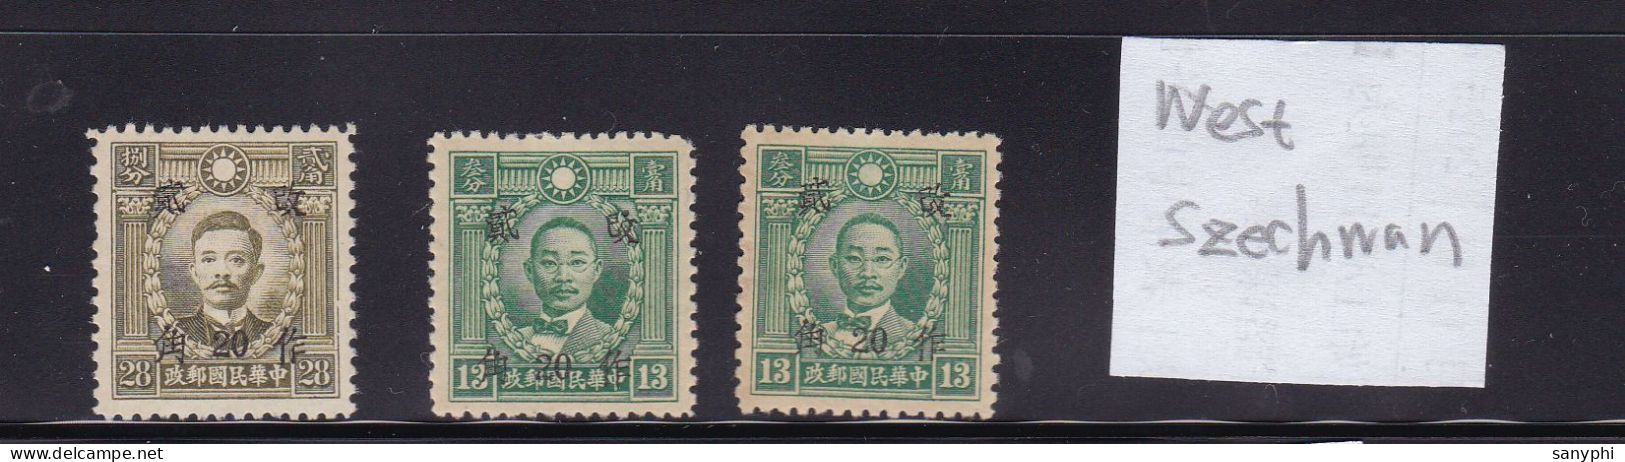 China Republic Martyt Provincial Ovpts 3 Unused Stamps-West Szechwan - 1912-1949 République